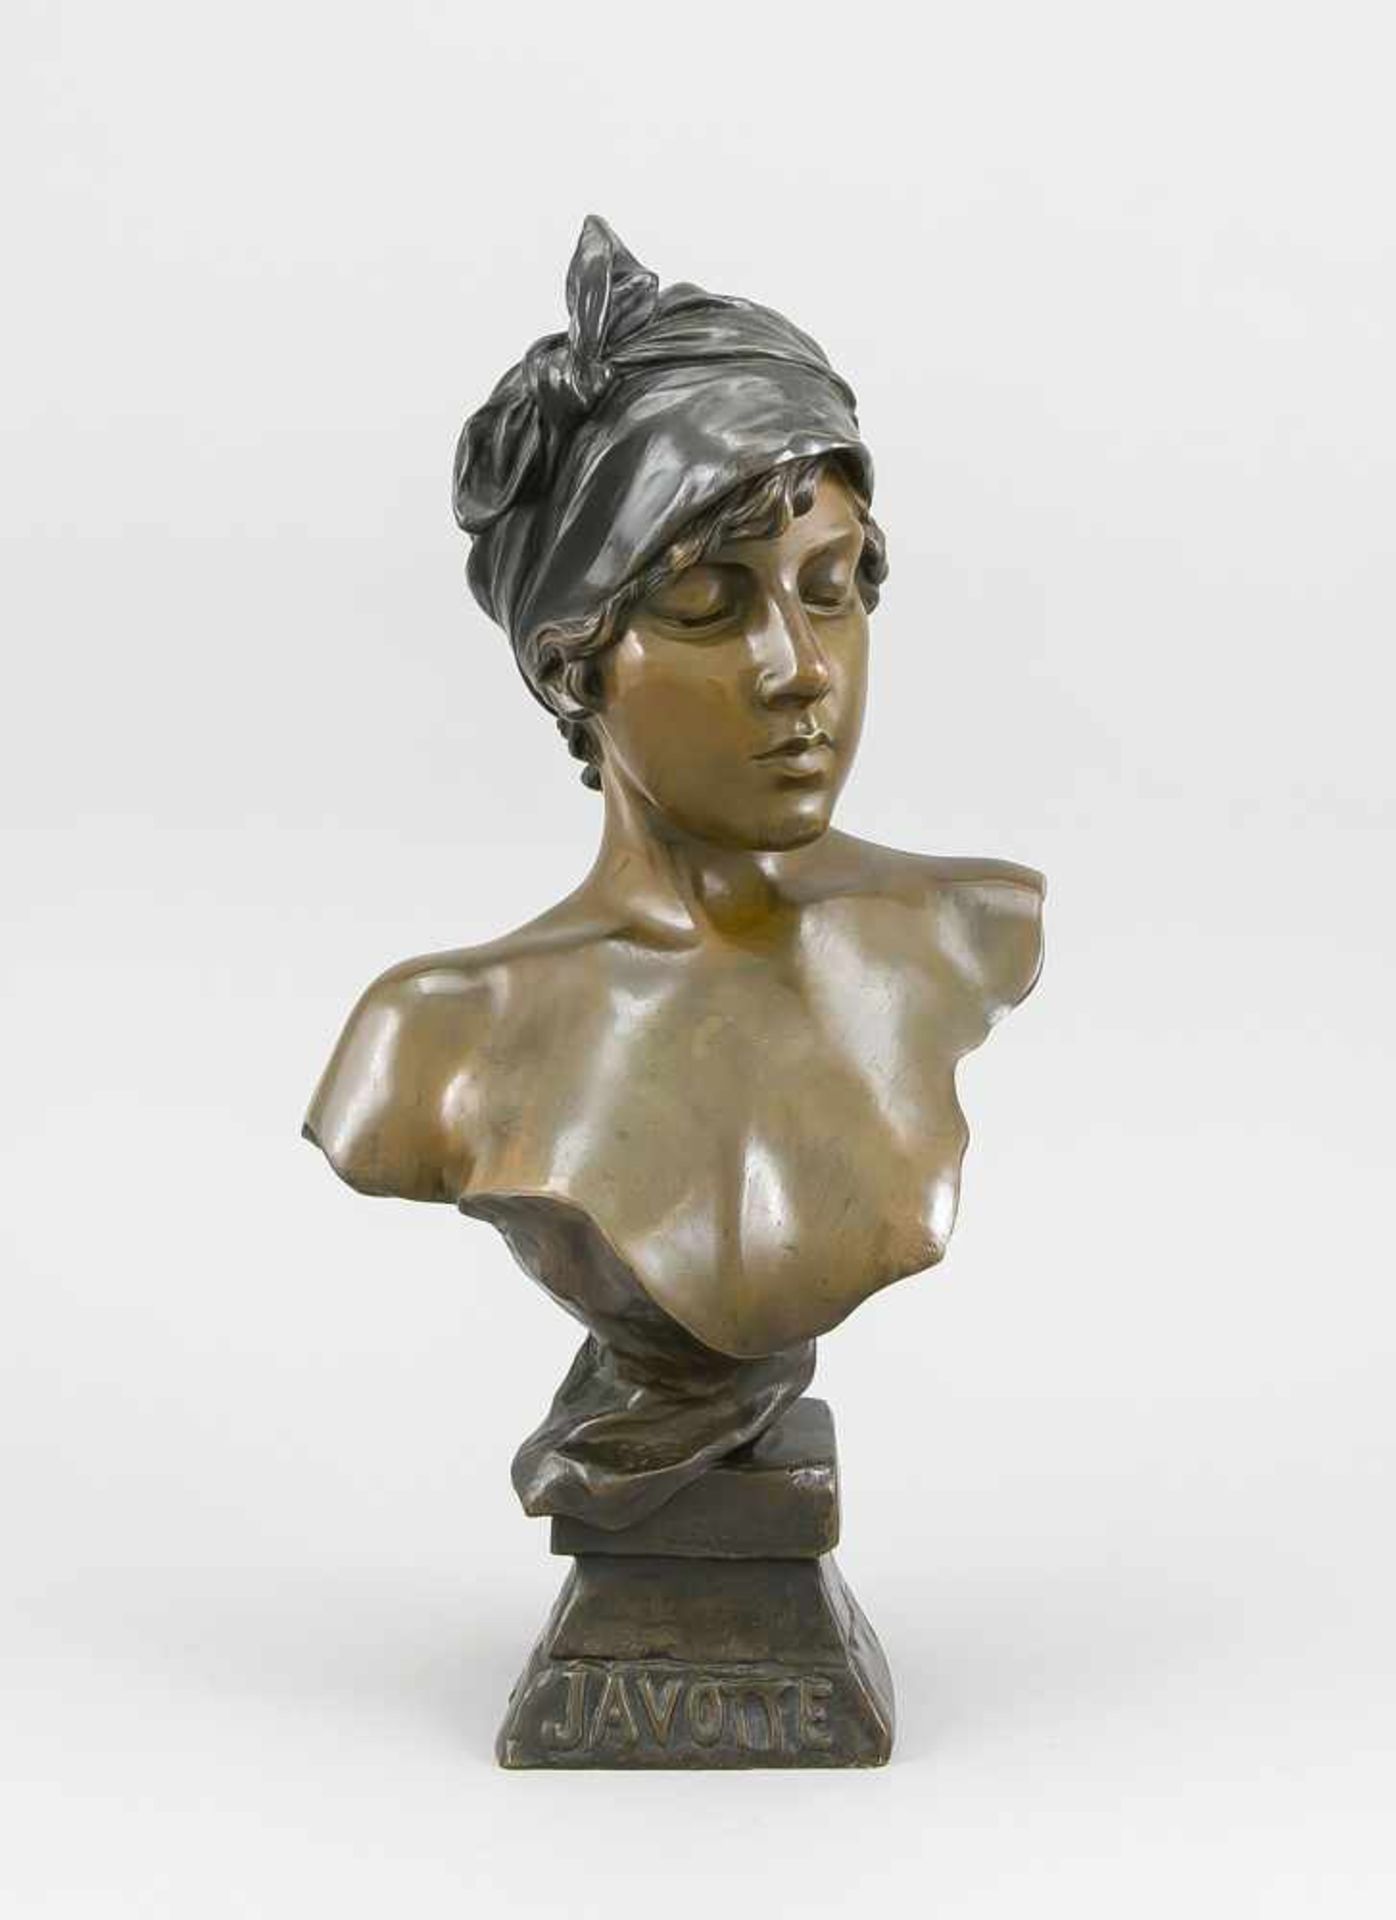 Emmanuel Villanis (1858-1914), Mädchenbüste des Art Nouveau "Javotte", grünbraunpatinierte Bronze um